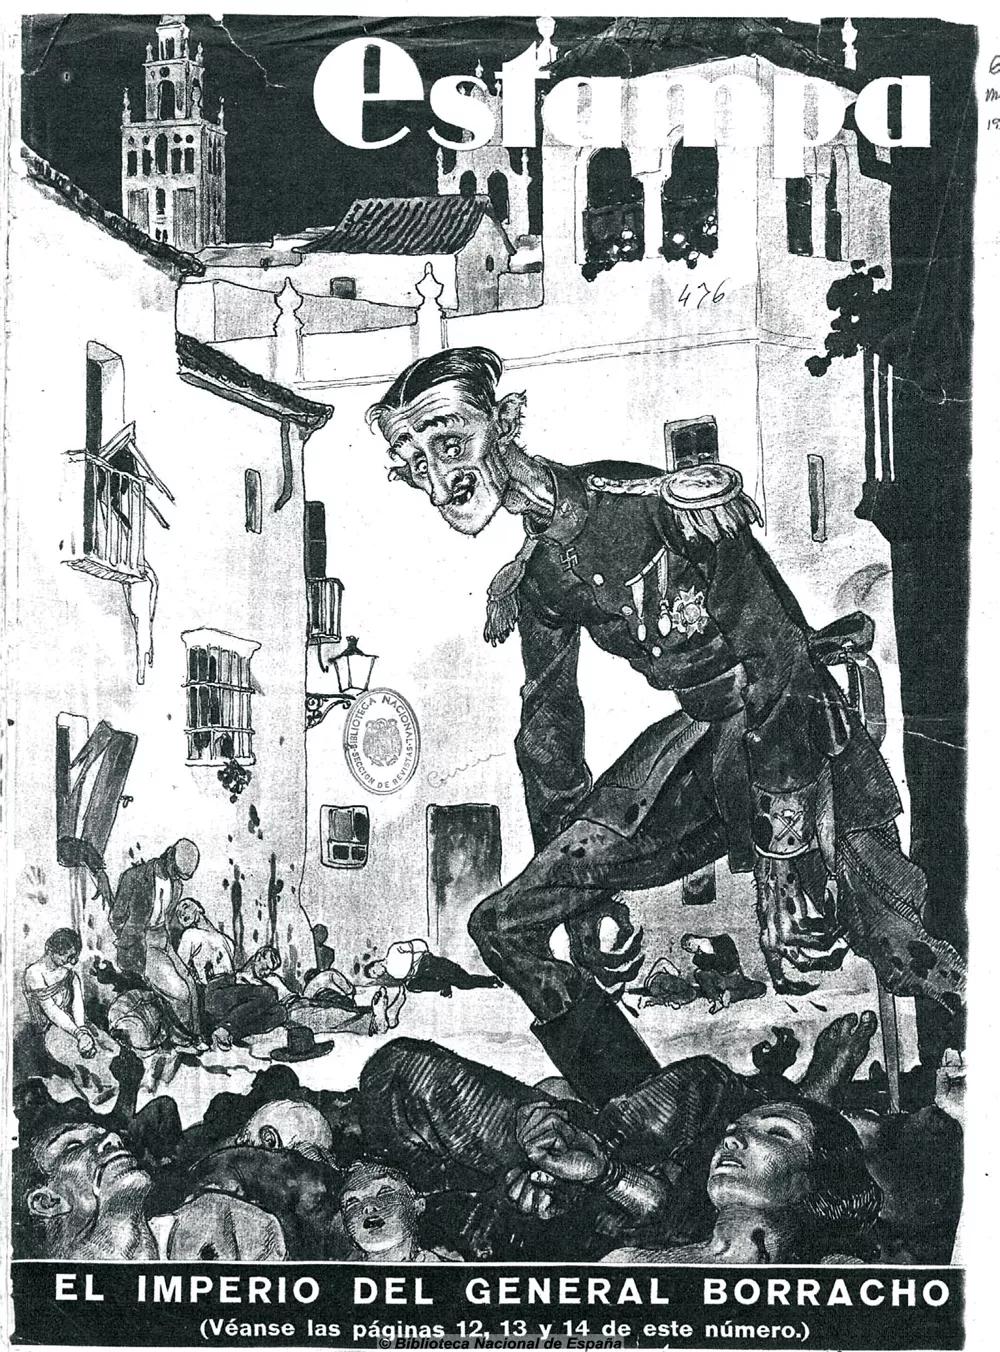 Una caricatura de Queipo de Llano en Sevilla, “El imperio del general borracho” (Estampa, 6-3-1937).